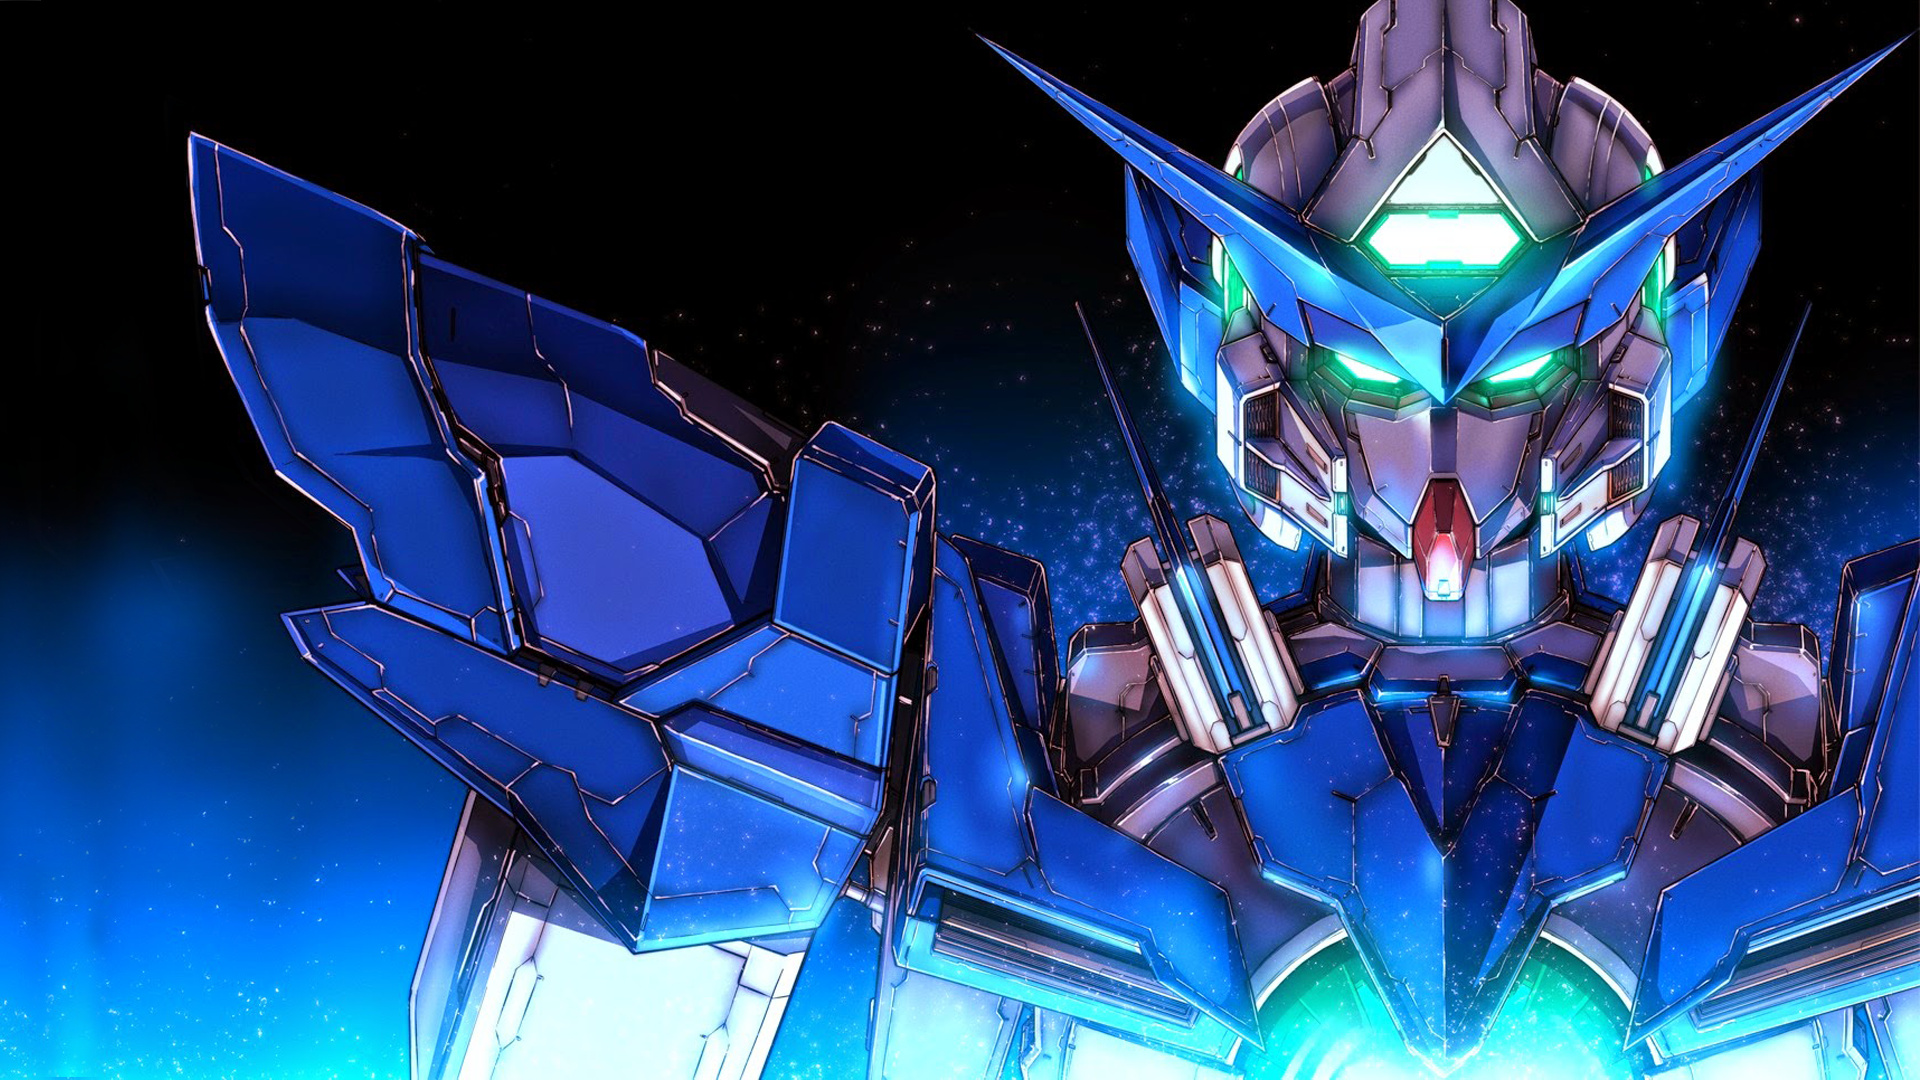 Gundam gallery, Stunning artworks and illustrations, 1920x1080 Full HD Desktop